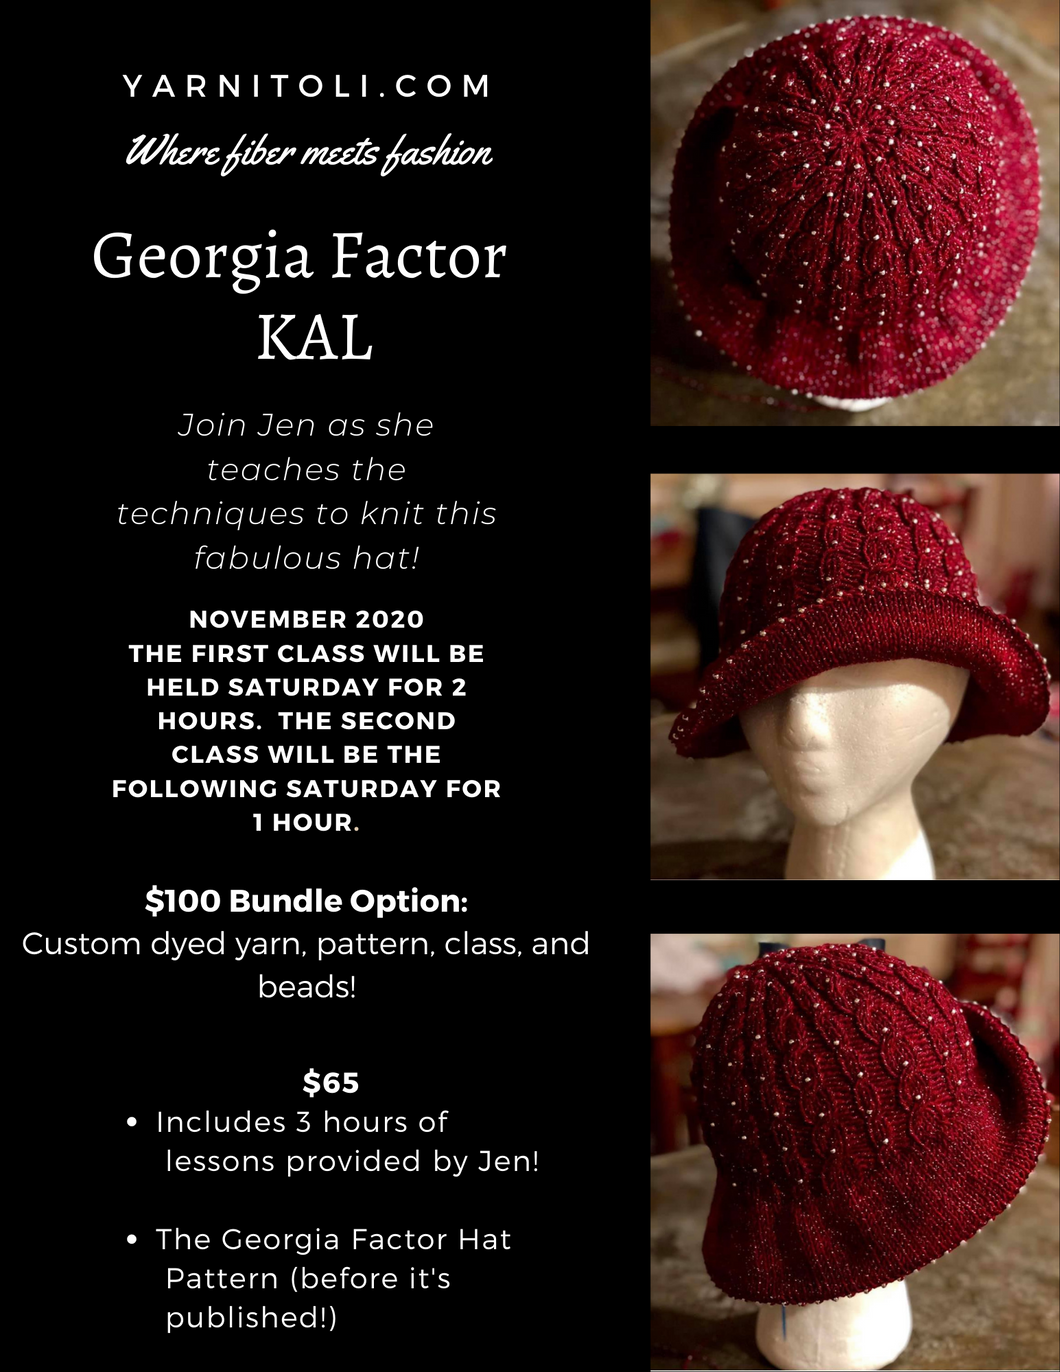 Georgia Factor KAL Bundle  $100.00